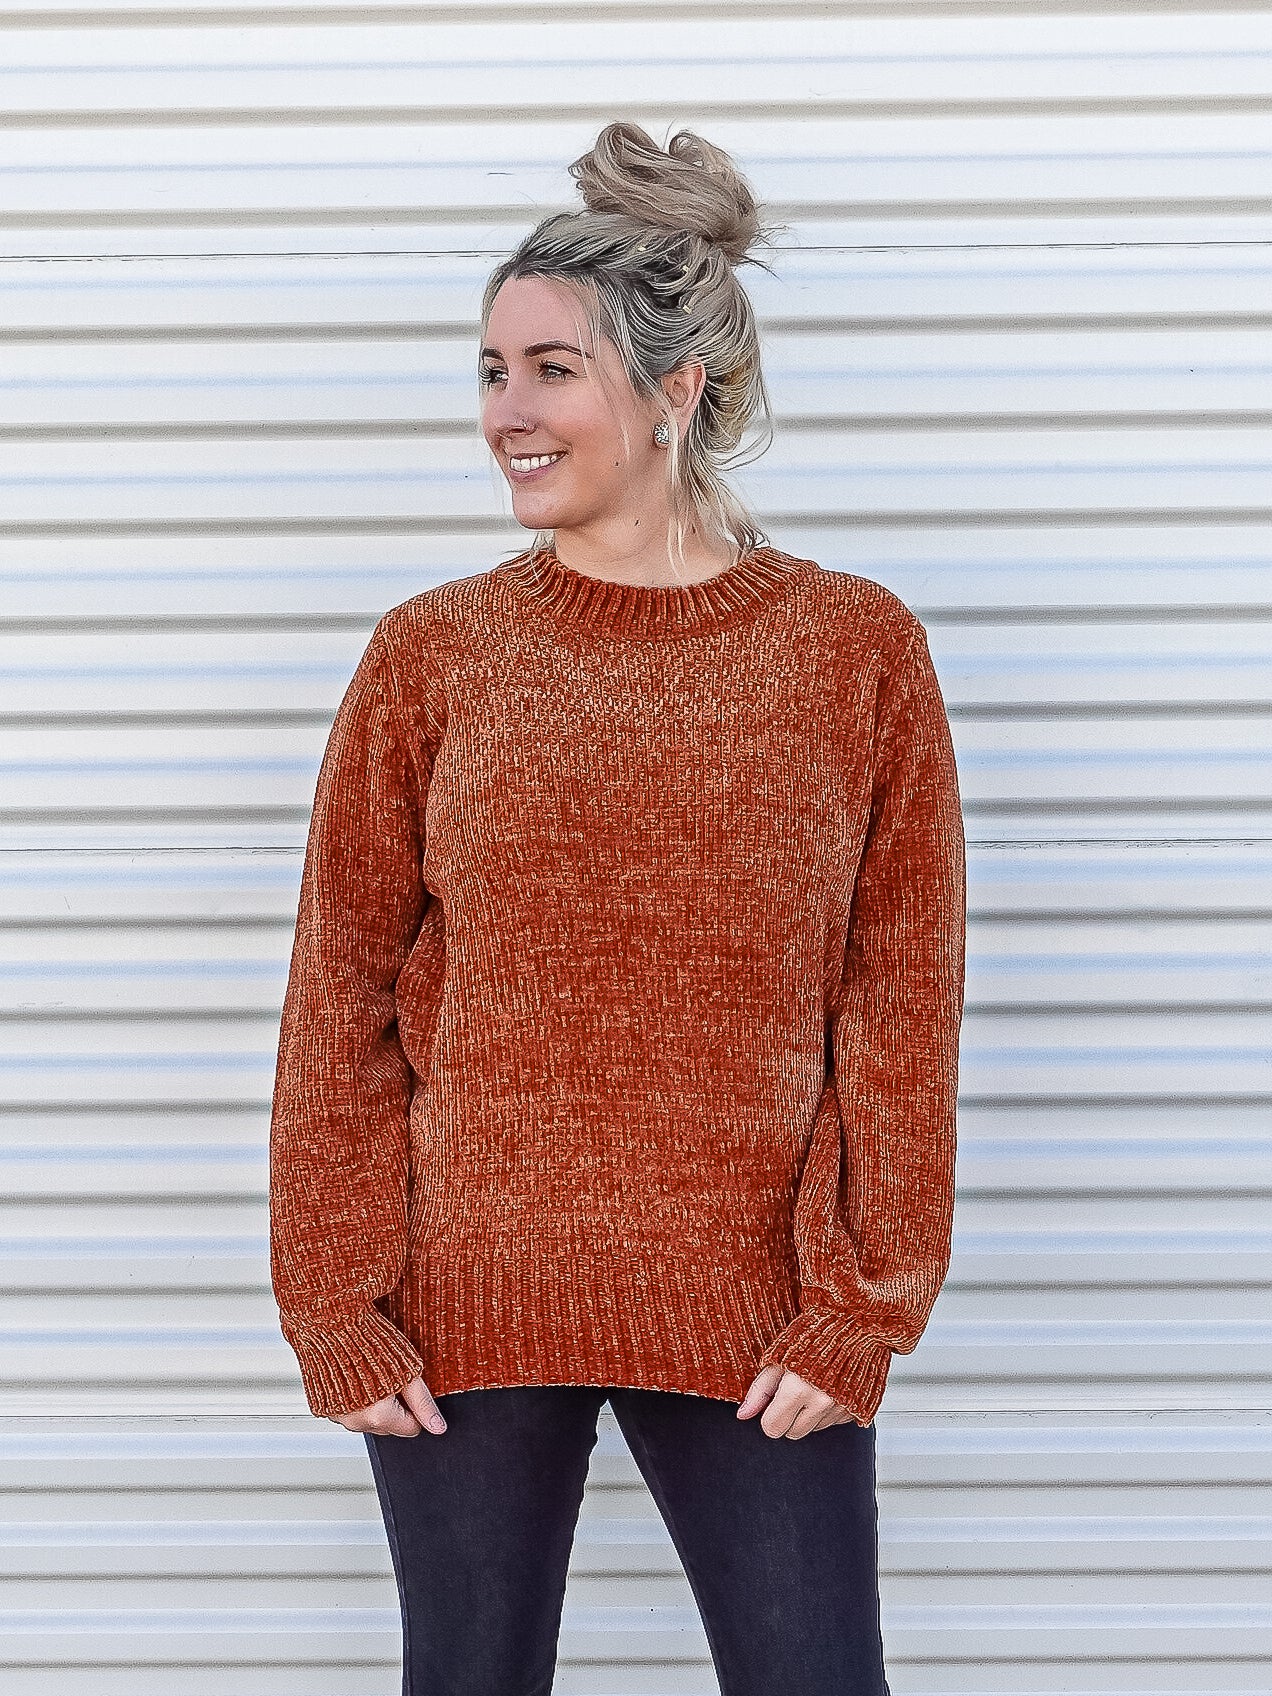 Rust colored super soft sweater